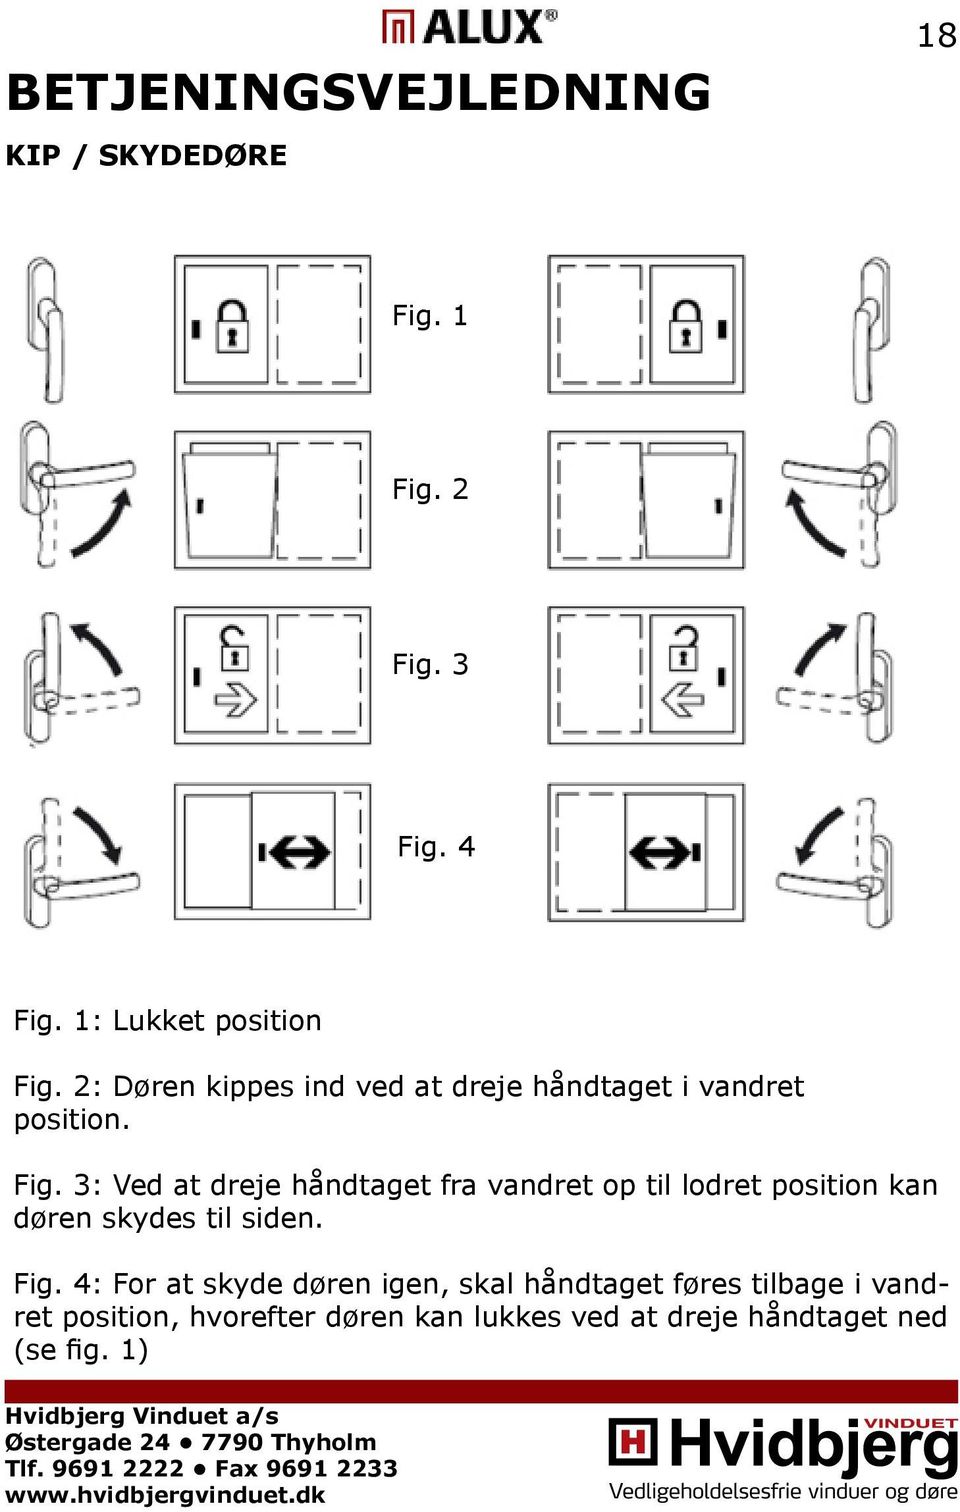 3: Ved at dreje håndtaget fra vandret op til lodret position kan døren skydes til siden. Fig.